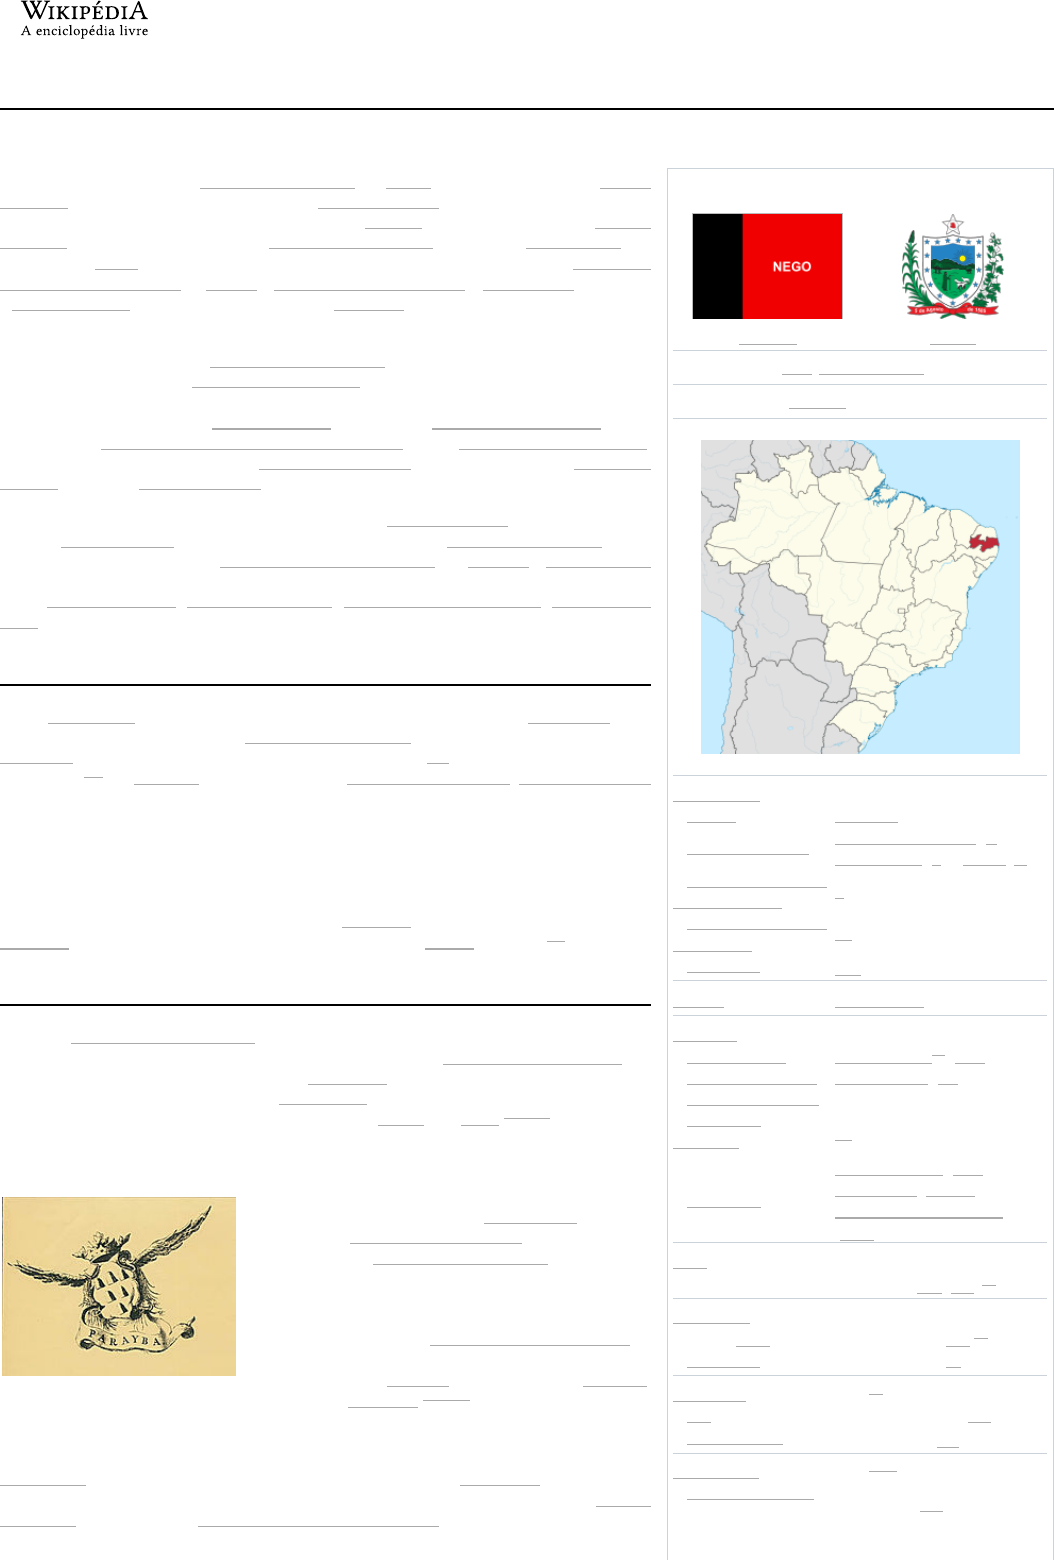 Braga – Wikipédia, a enciclopédia livre